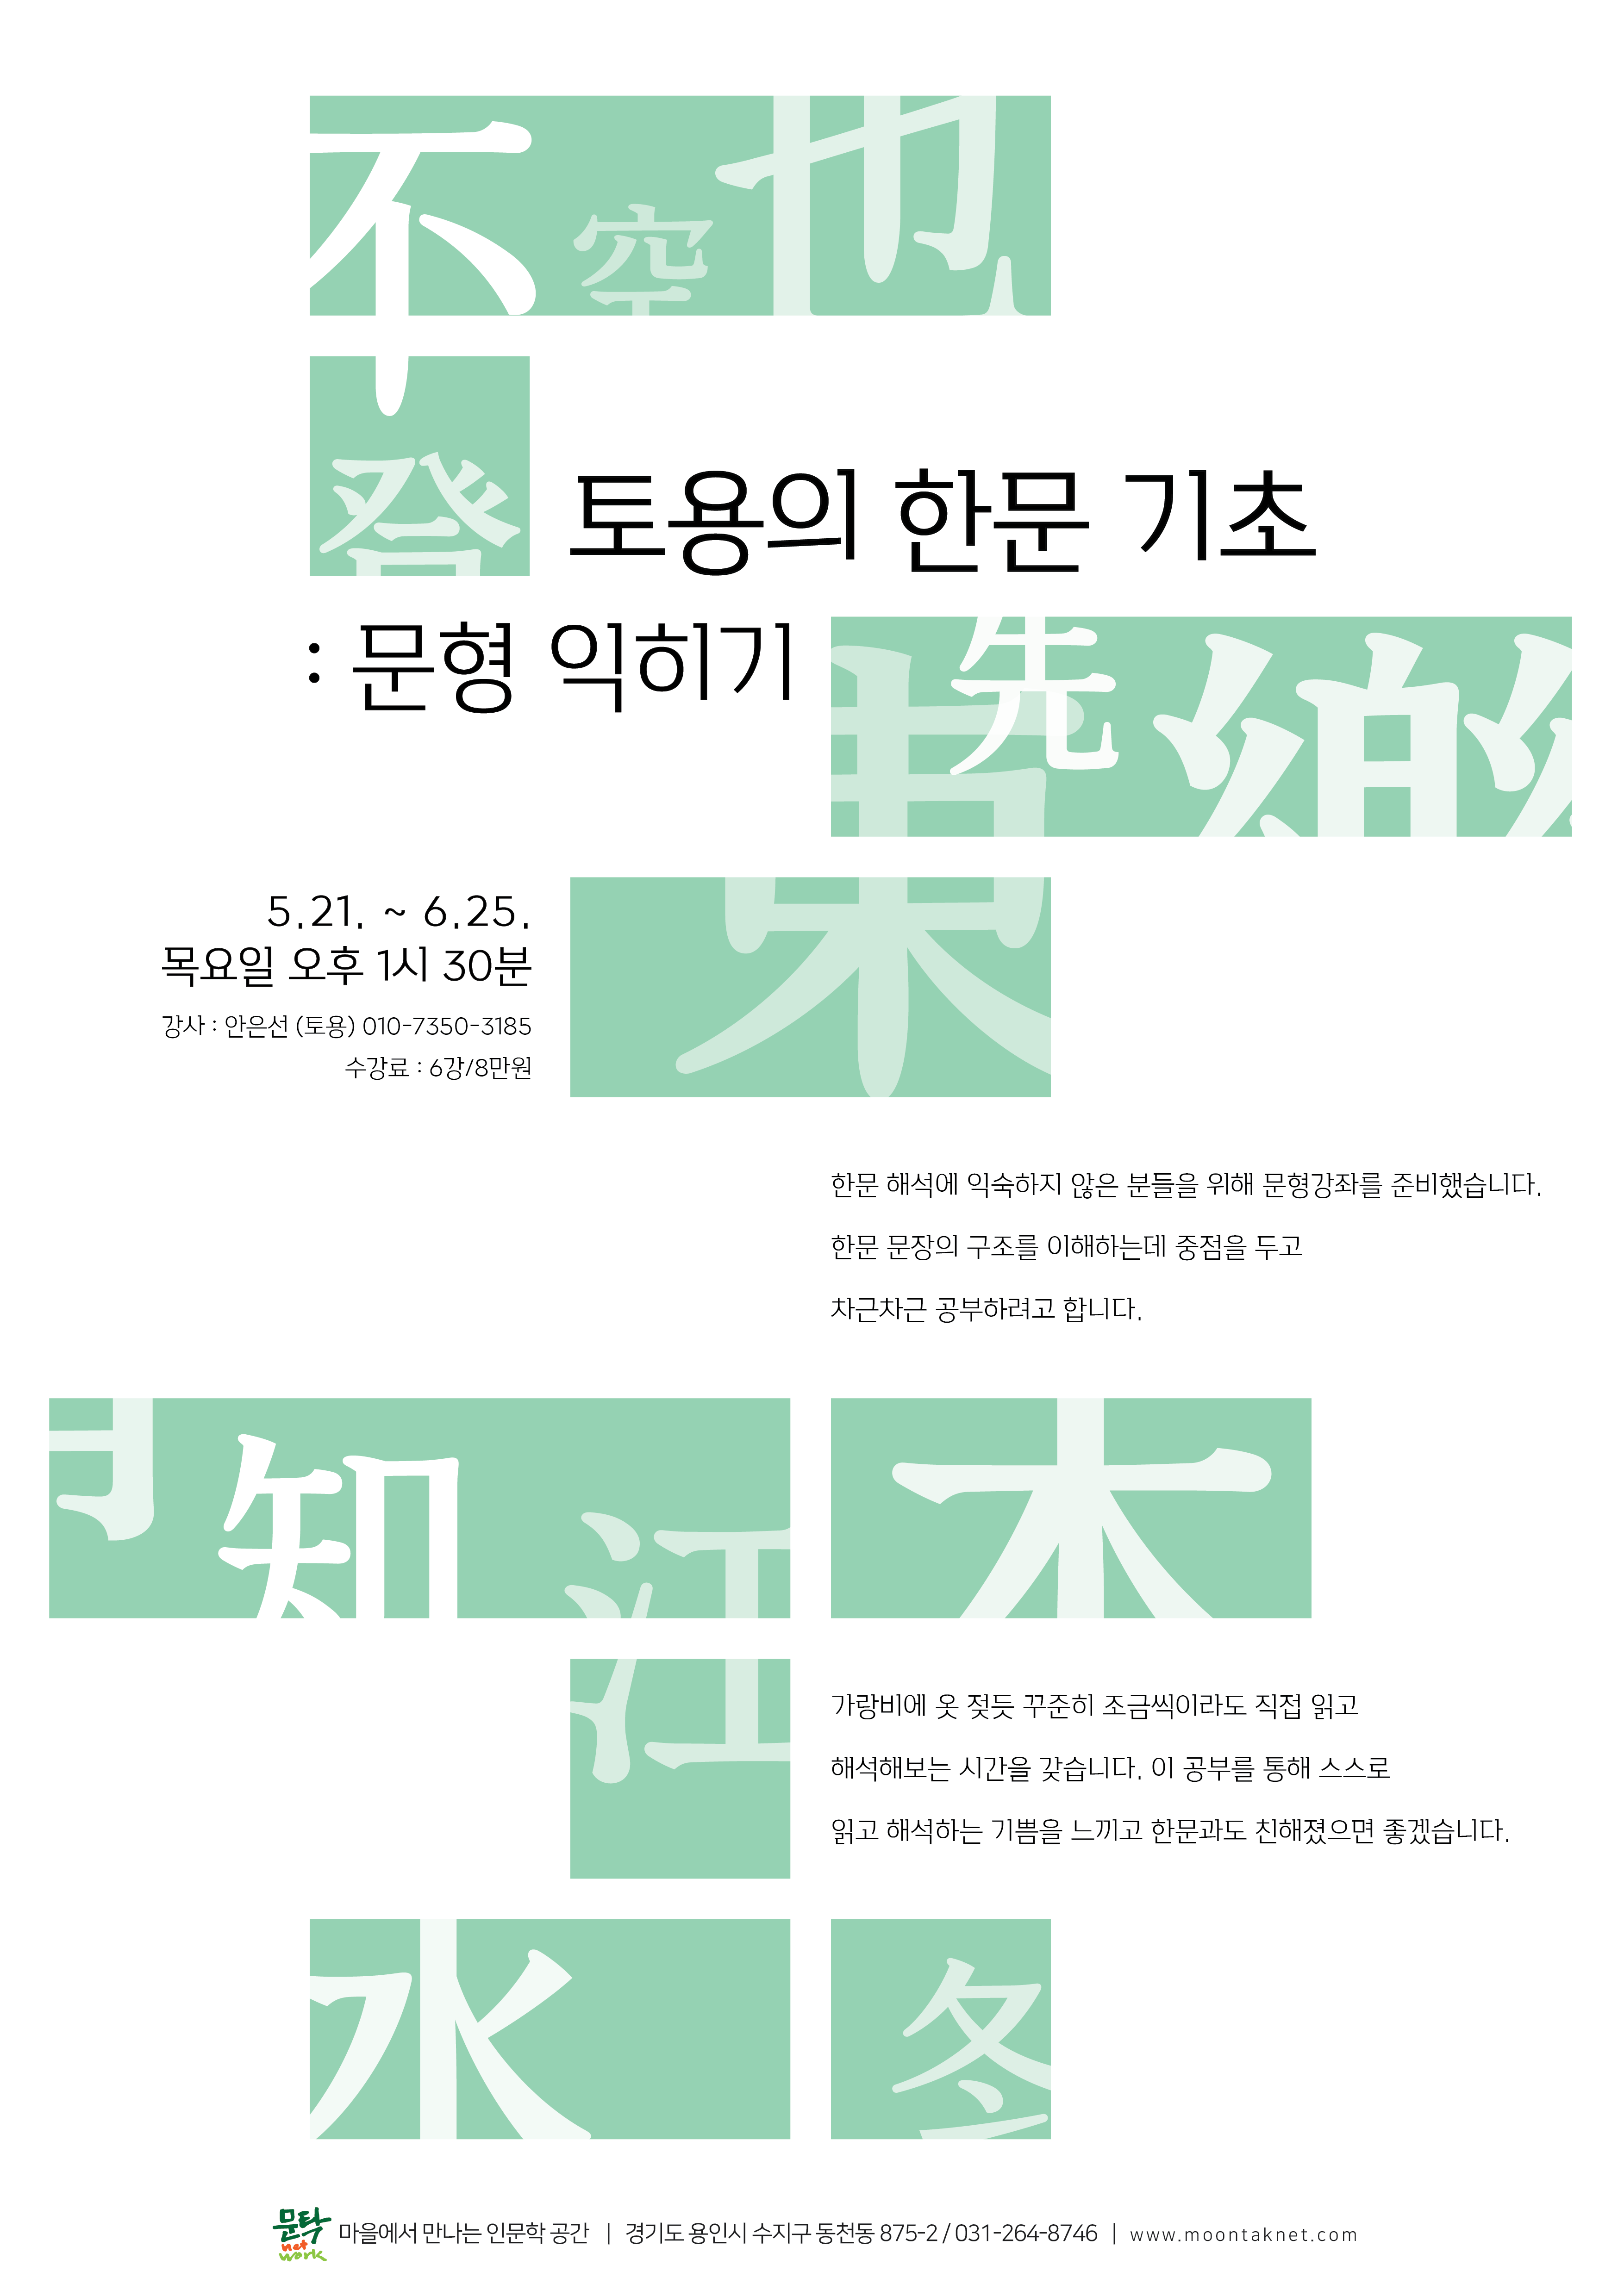 토용의-한문기초-포스터-copy-바탕체-01.png